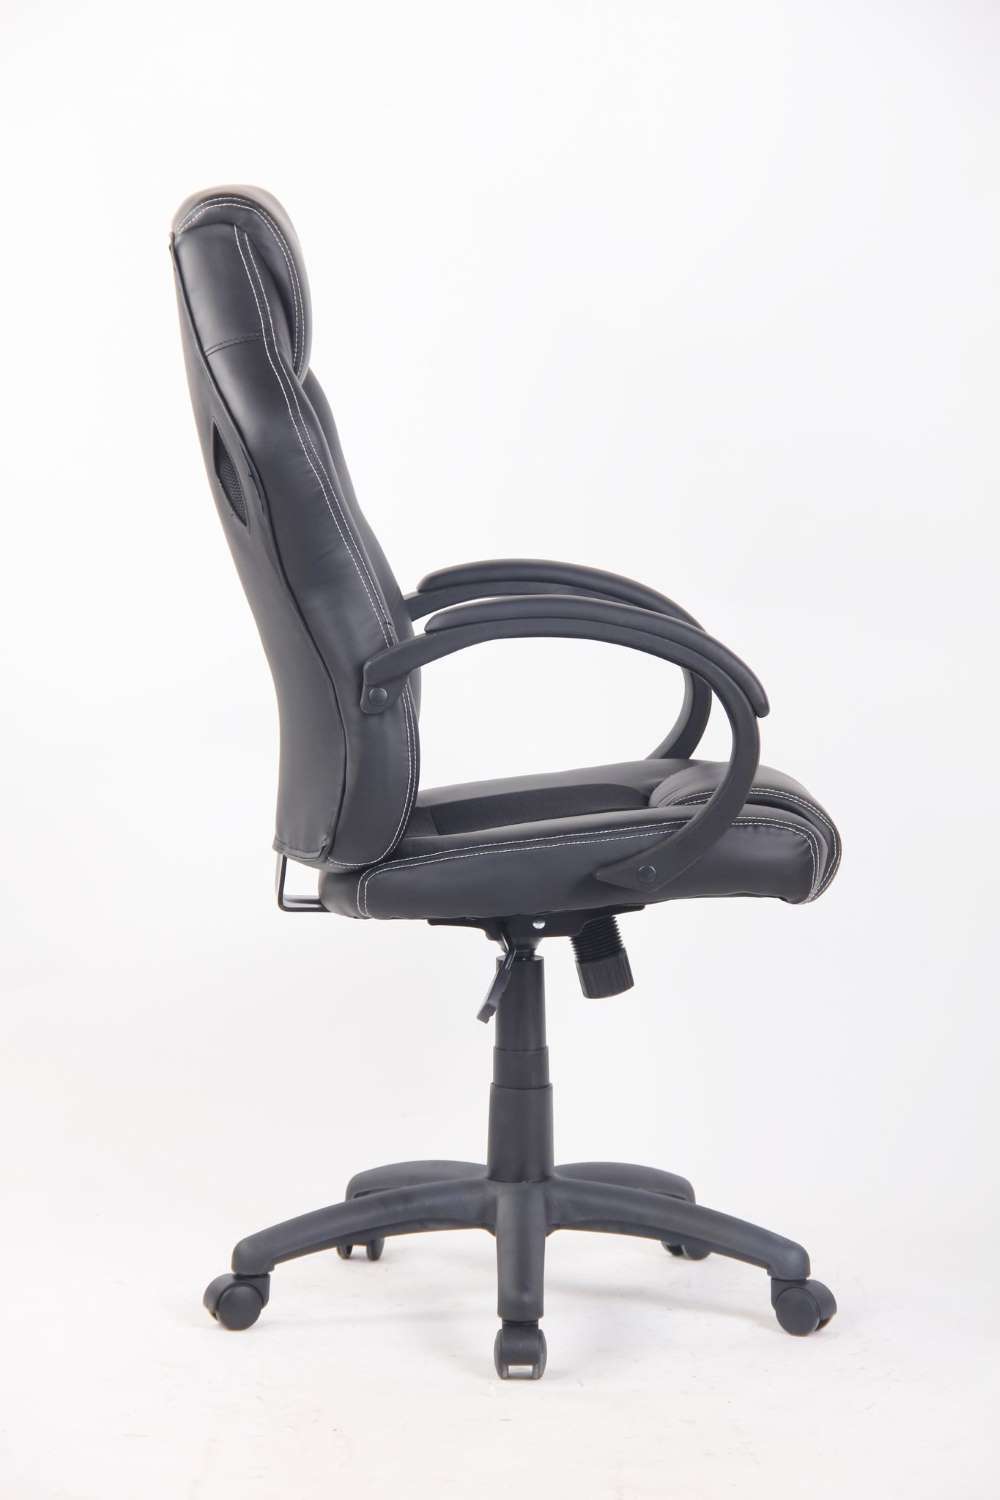 Chapman Gaming Chair - Black